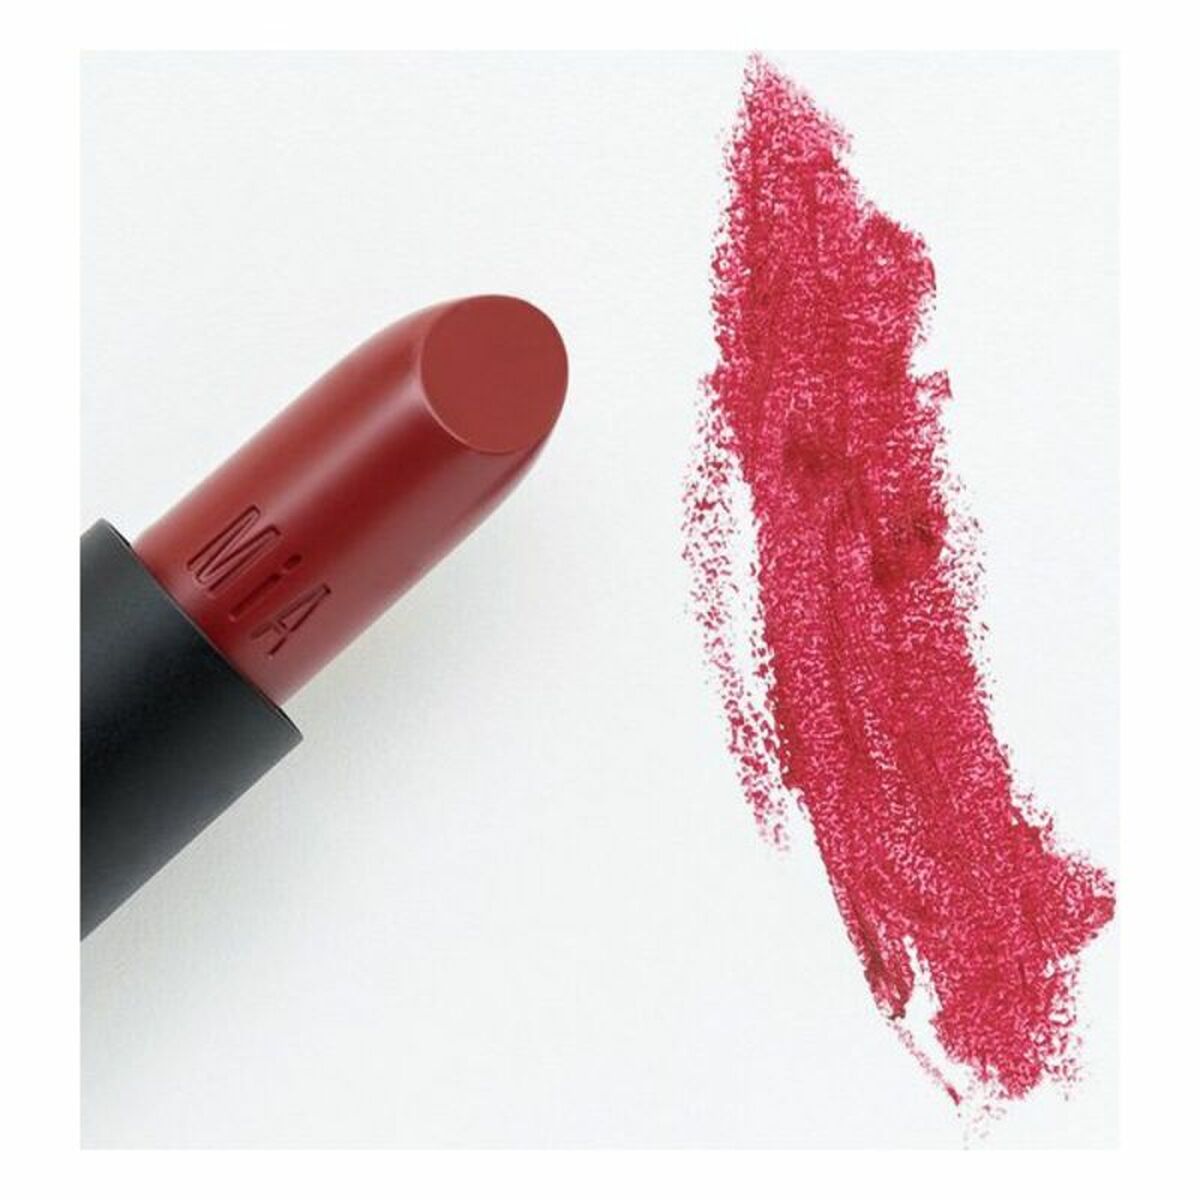 Feuchtigkeitsspendender Lippenstift Mia Cosmetics Paris 510-Crimson Carnation (4 g) - CA International  